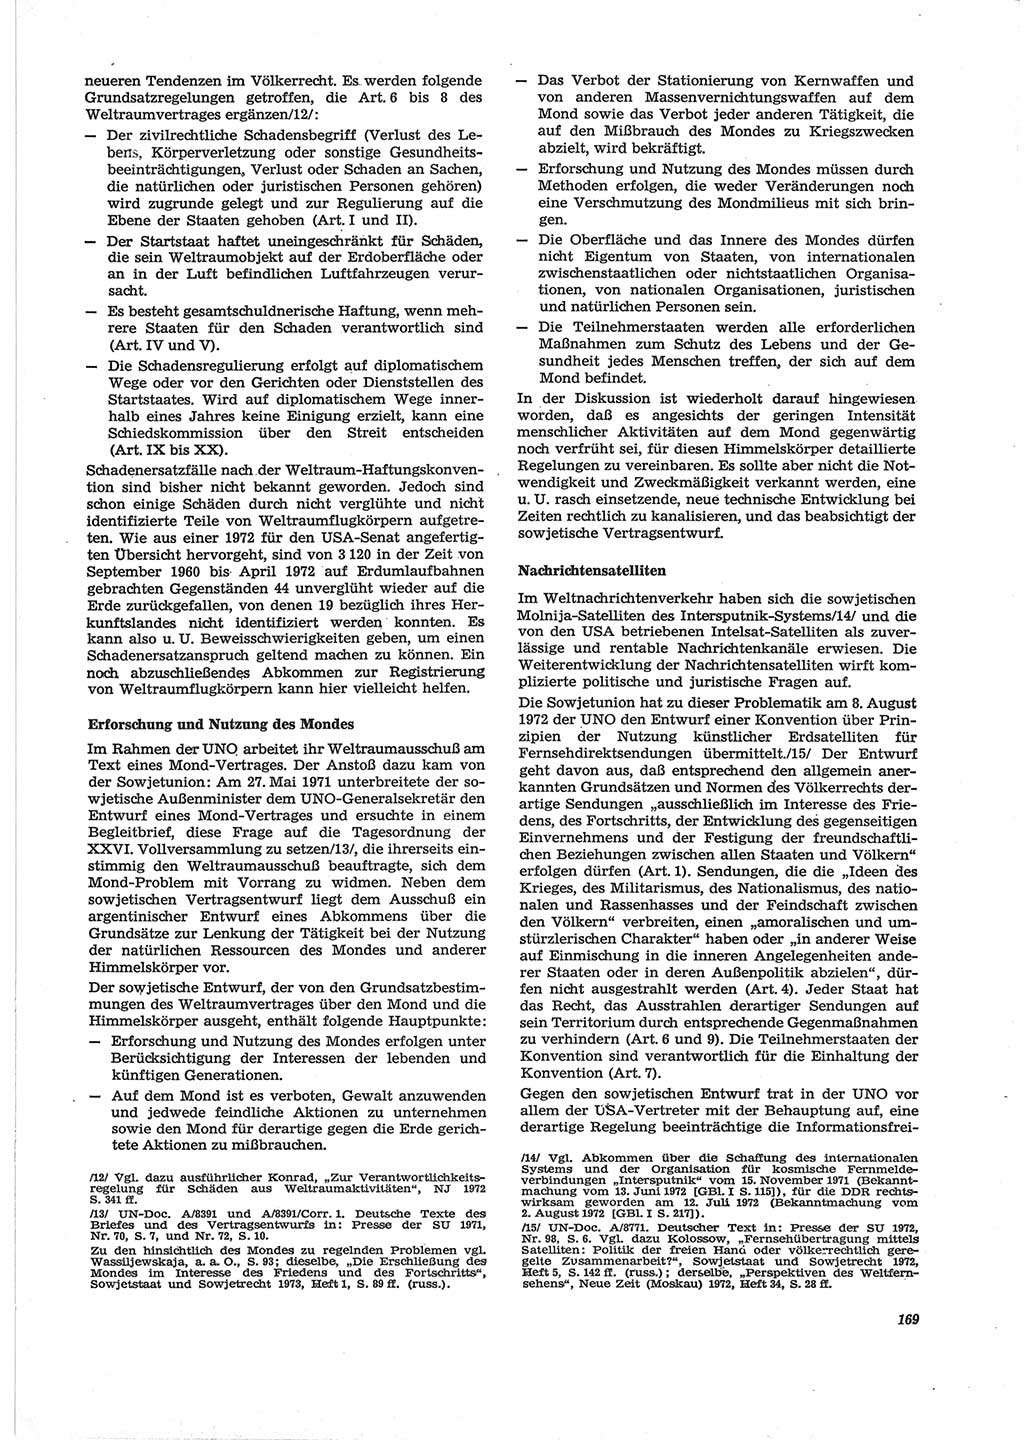 Neue Justiz (NJ), Zeitschrift für Recht und Rechtswissenschaft [Deutsche Demokratische Republik (DDR)], 28. Jahrgang 1974, Seite 169 (NJ DDR 1974, S. 169)